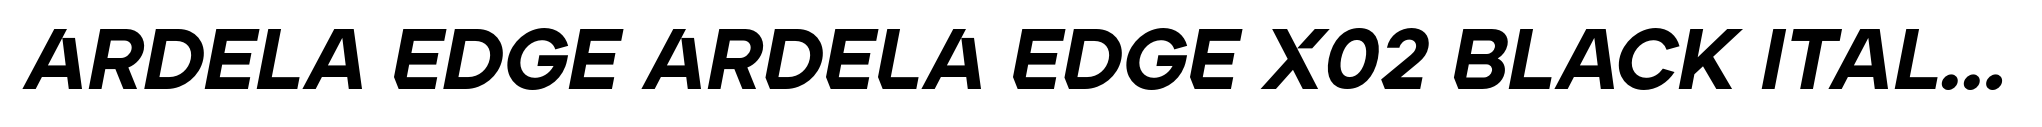 Ardela Edge ARDELA EDGE X02 Black Italic image